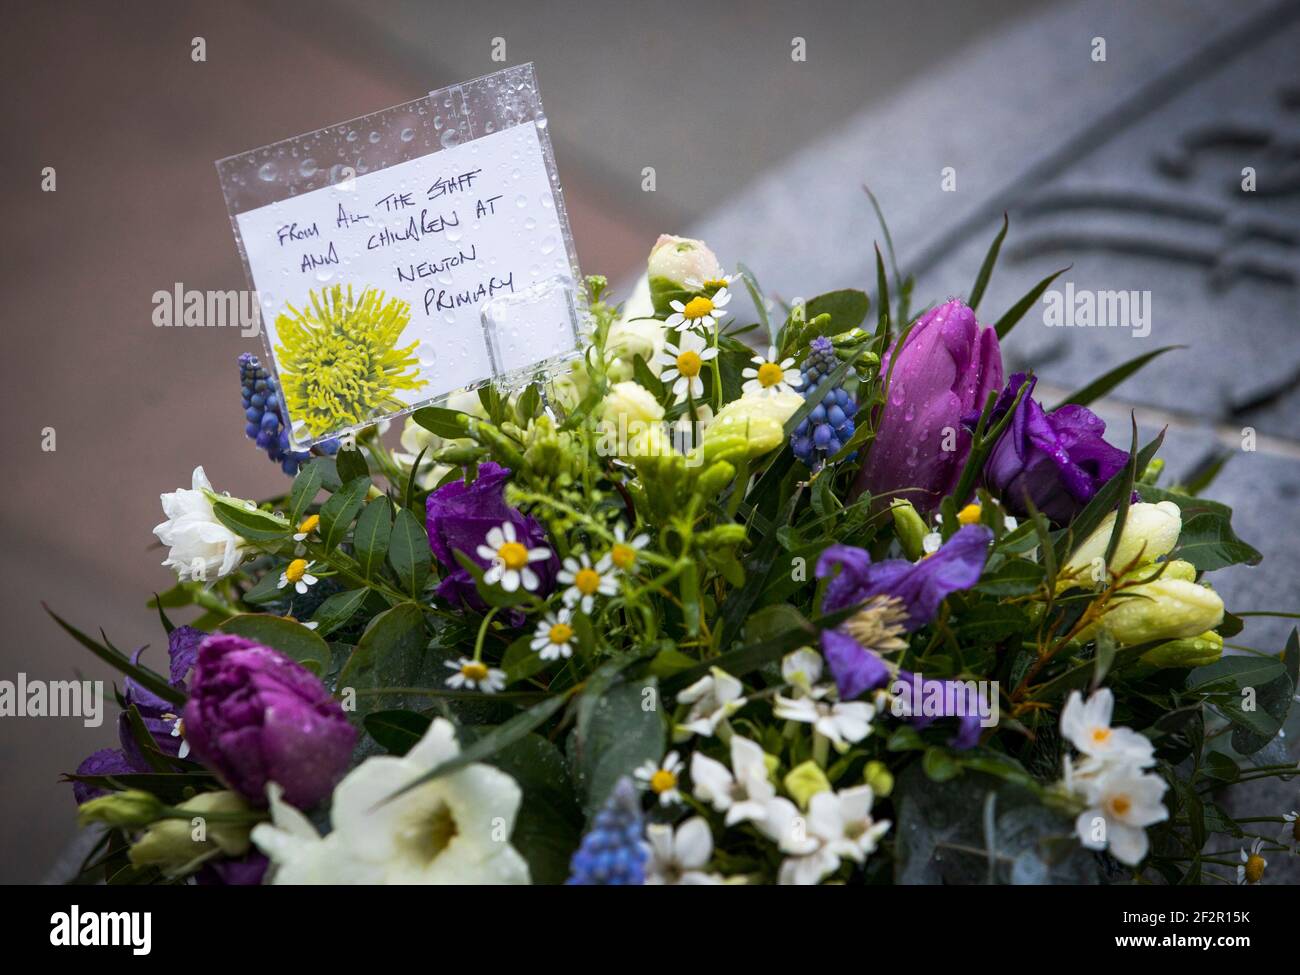 Blumengebete, die vor dem 25th. Jahrestag der Schießerei am Samstag im Gedenkbrunnen auf dem Friedhof von Dunblane für die Opfer des Massakers von Dunblane hinterlassen wurden. Bilddatum: Freitag, 12. März 2021. Stockfoto